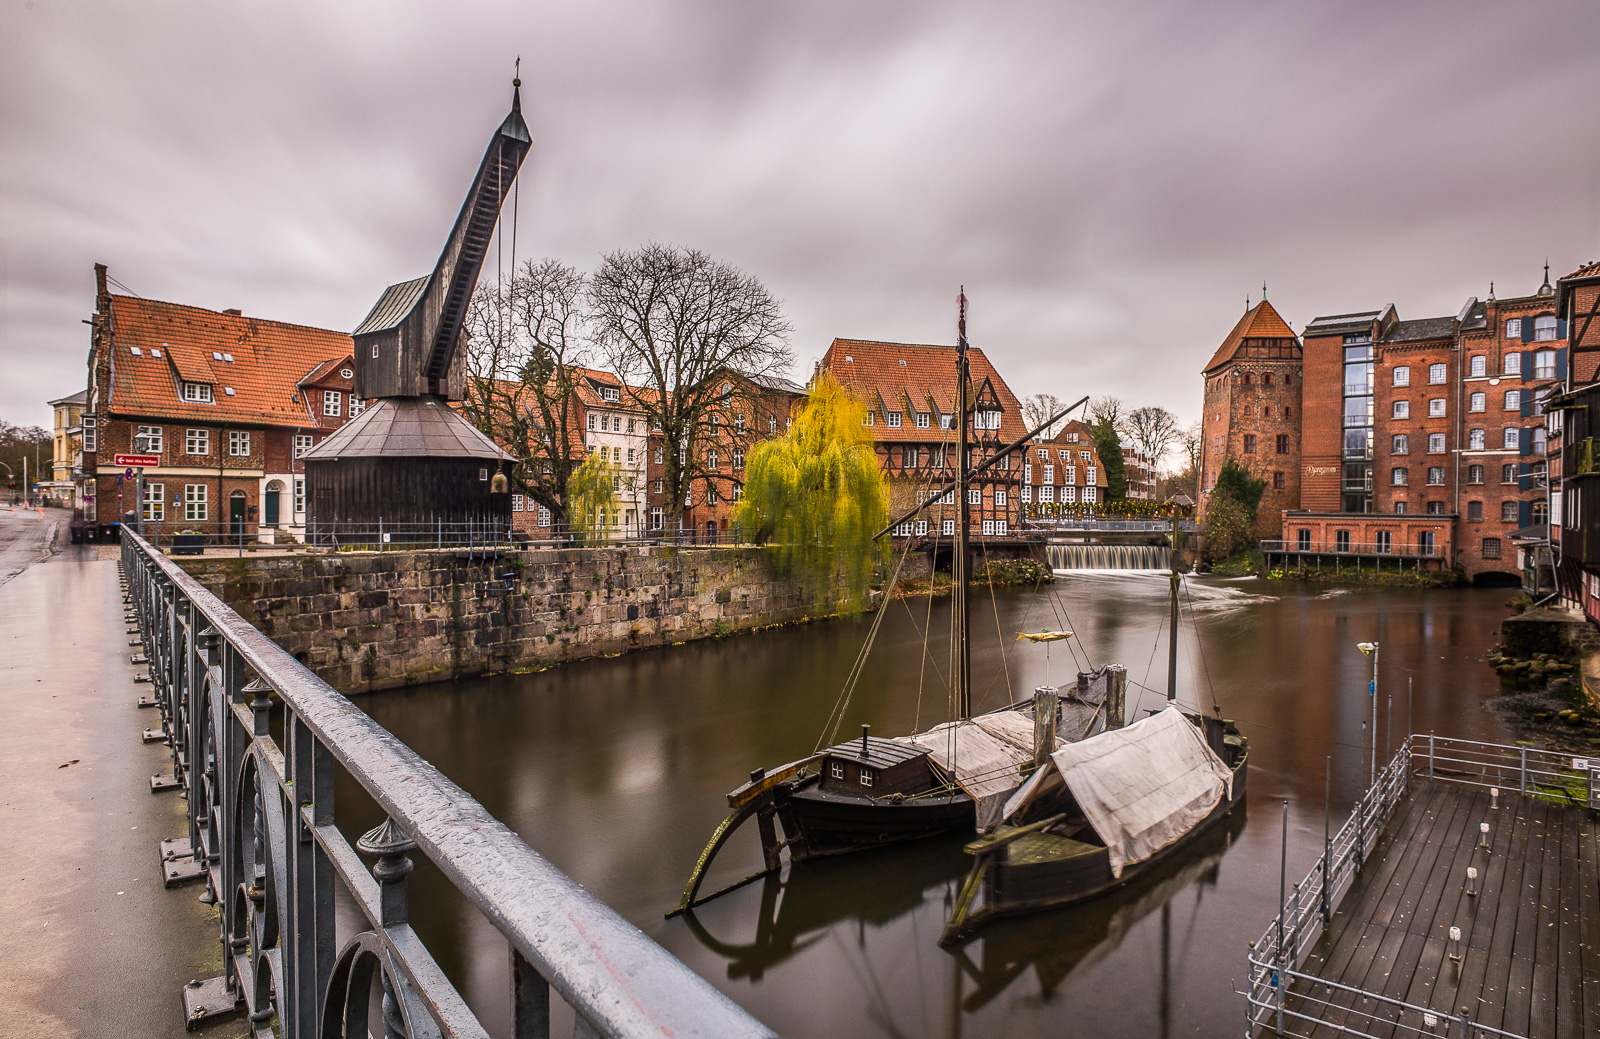 Alter Kran am Fleet in der Lüneburger Innenstadt, Langzeitbelichtung mit weich bewegten Wolken und Wasser